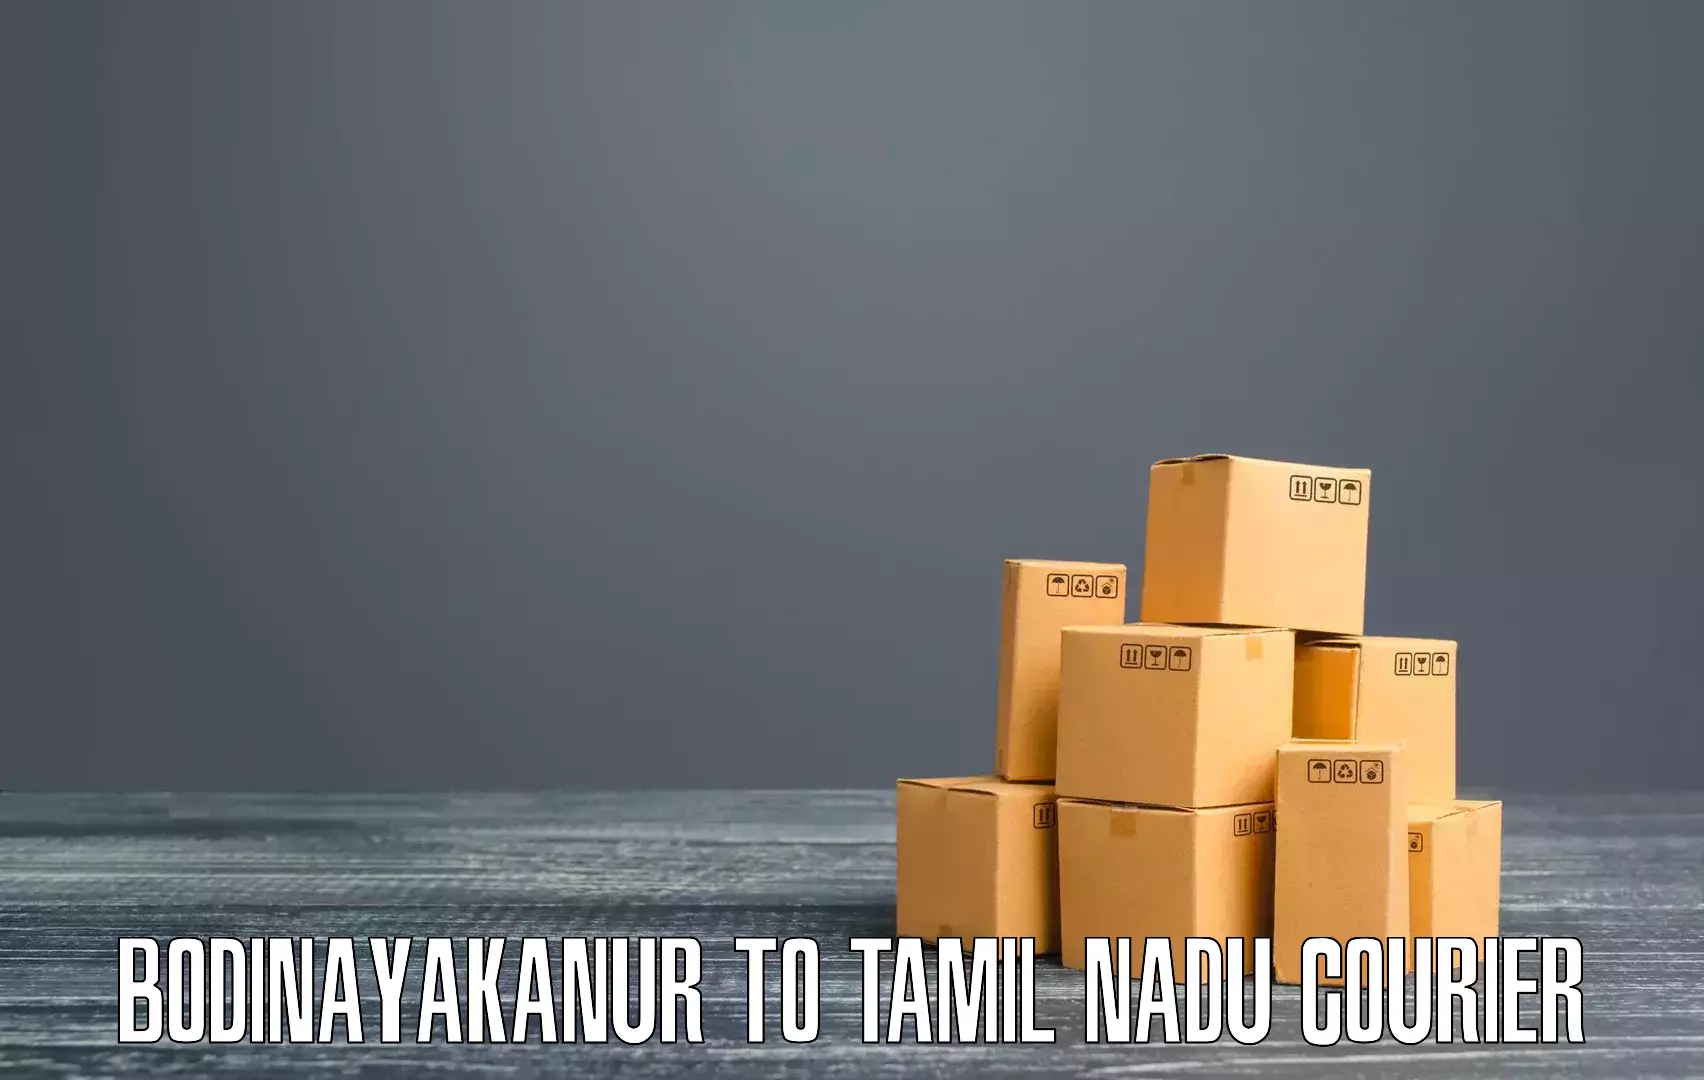 High-speed parcel service Bodinayakanur to Thiruvadanai